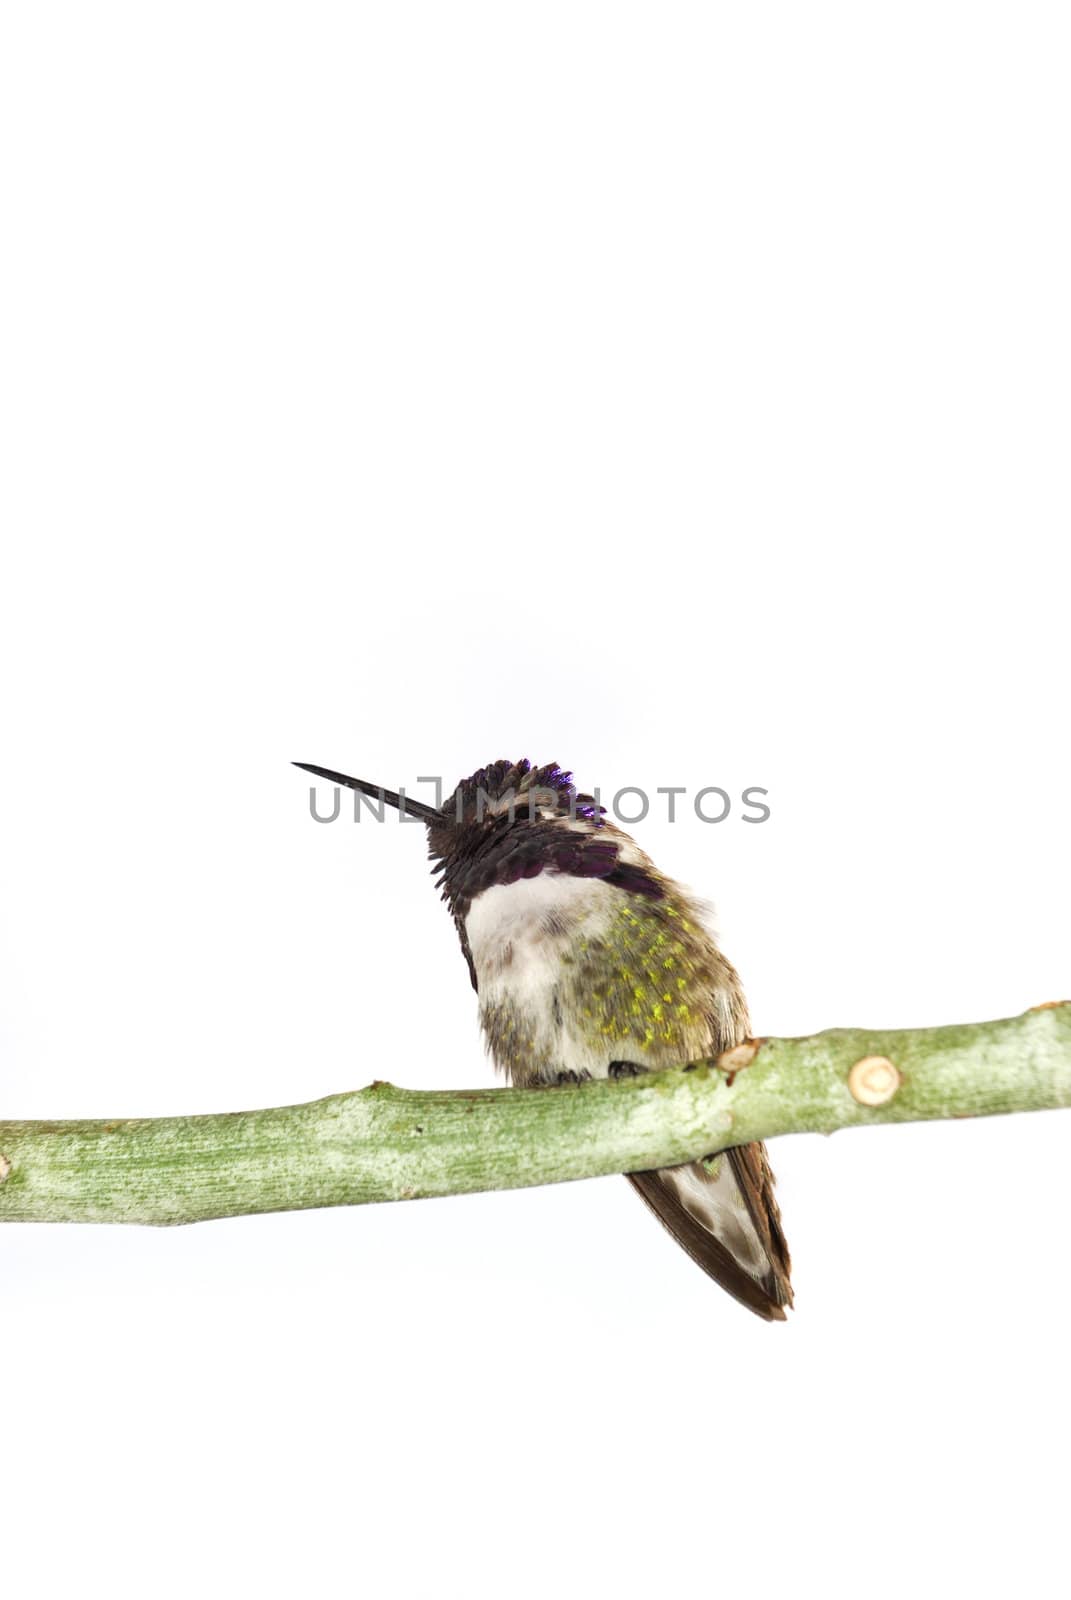 Costa's hummingbird by whitechild